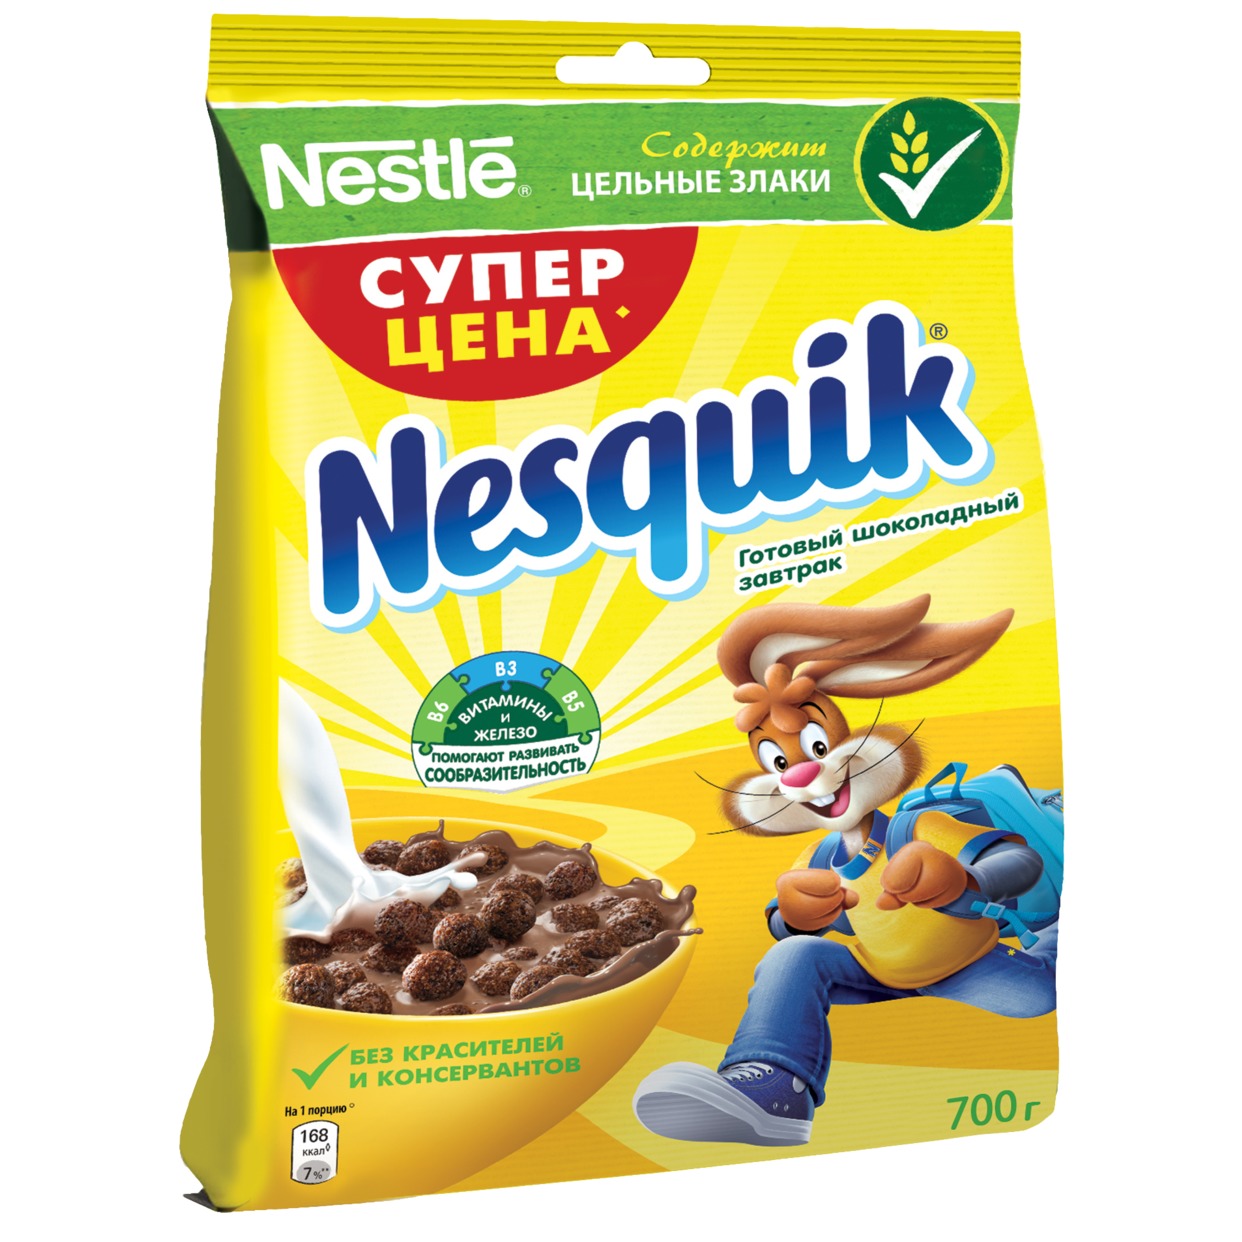 Готовый завтрак Nesquik, шоколадный, Nestle, 700 г по акции в Пятерочке